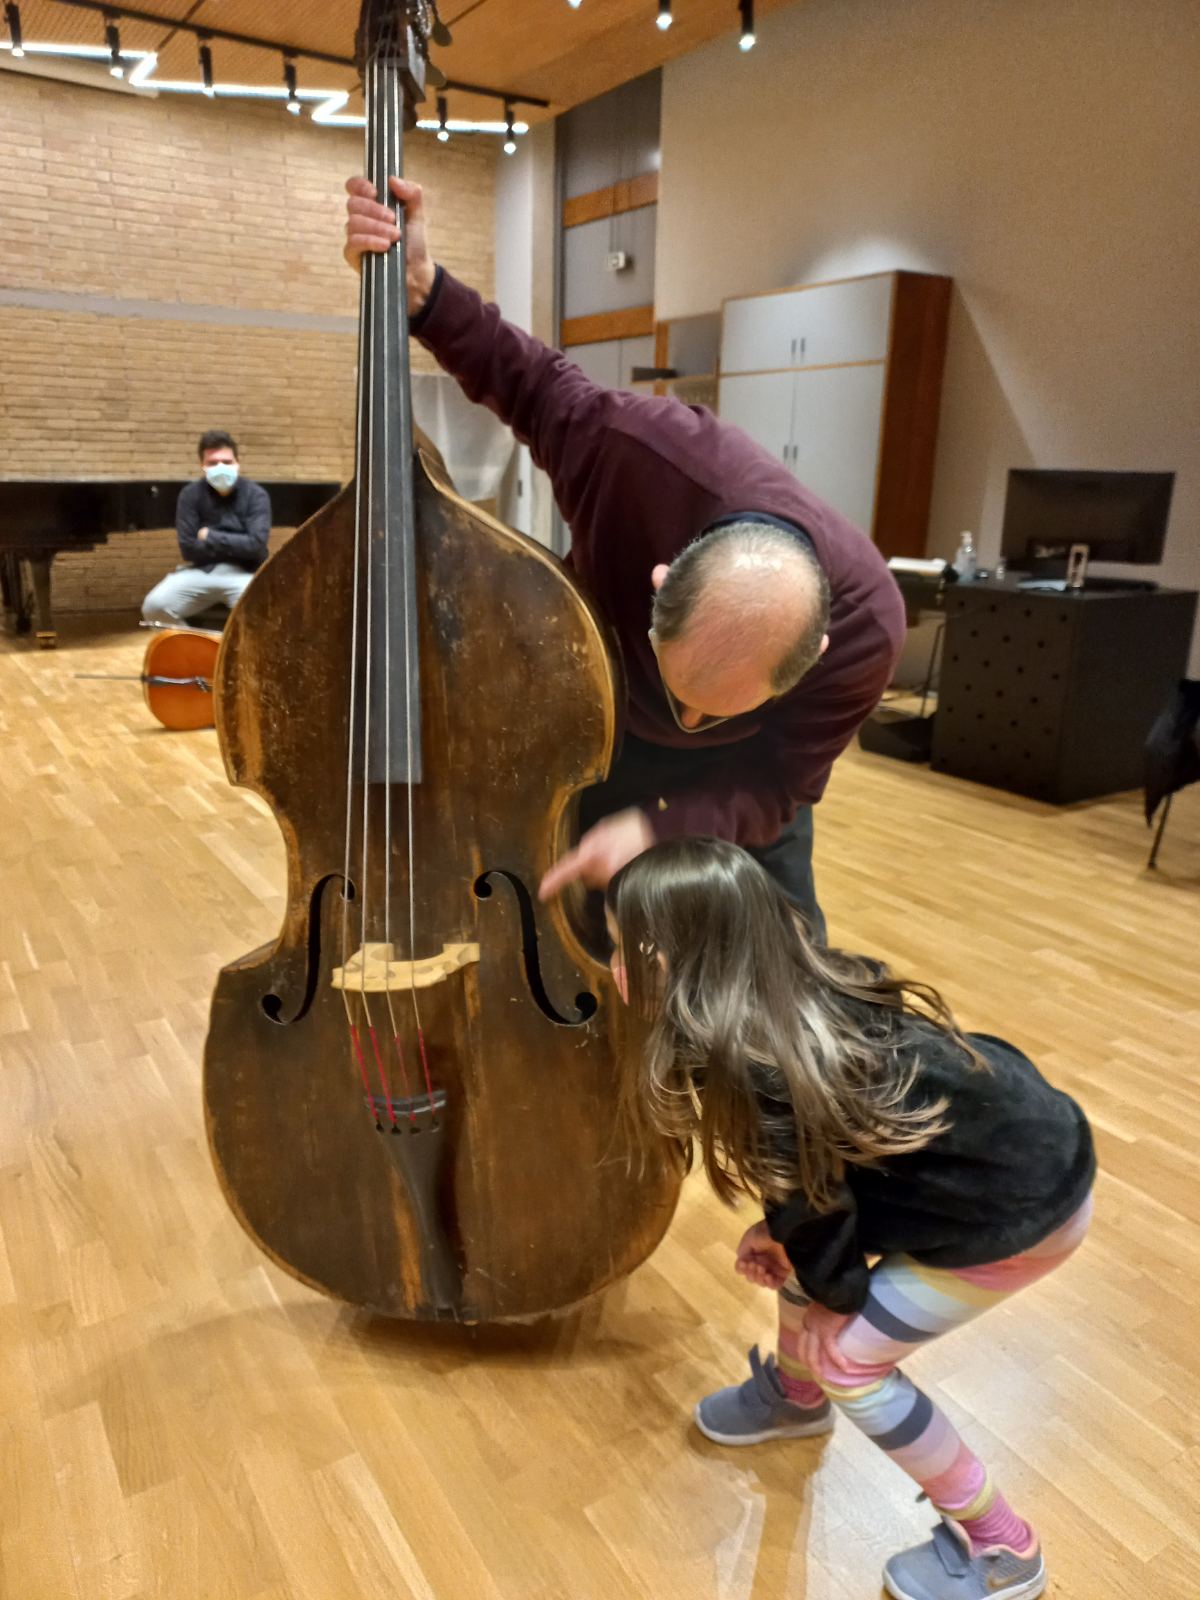 Εκπαιδευτικό πρόγραμμα «Γνωριμία με τα μουσικά όργανα» από το Ωδείο Αθηνών και το Ελληνικό Παιδικό Μουσείο (Νοέμβριος 2022)